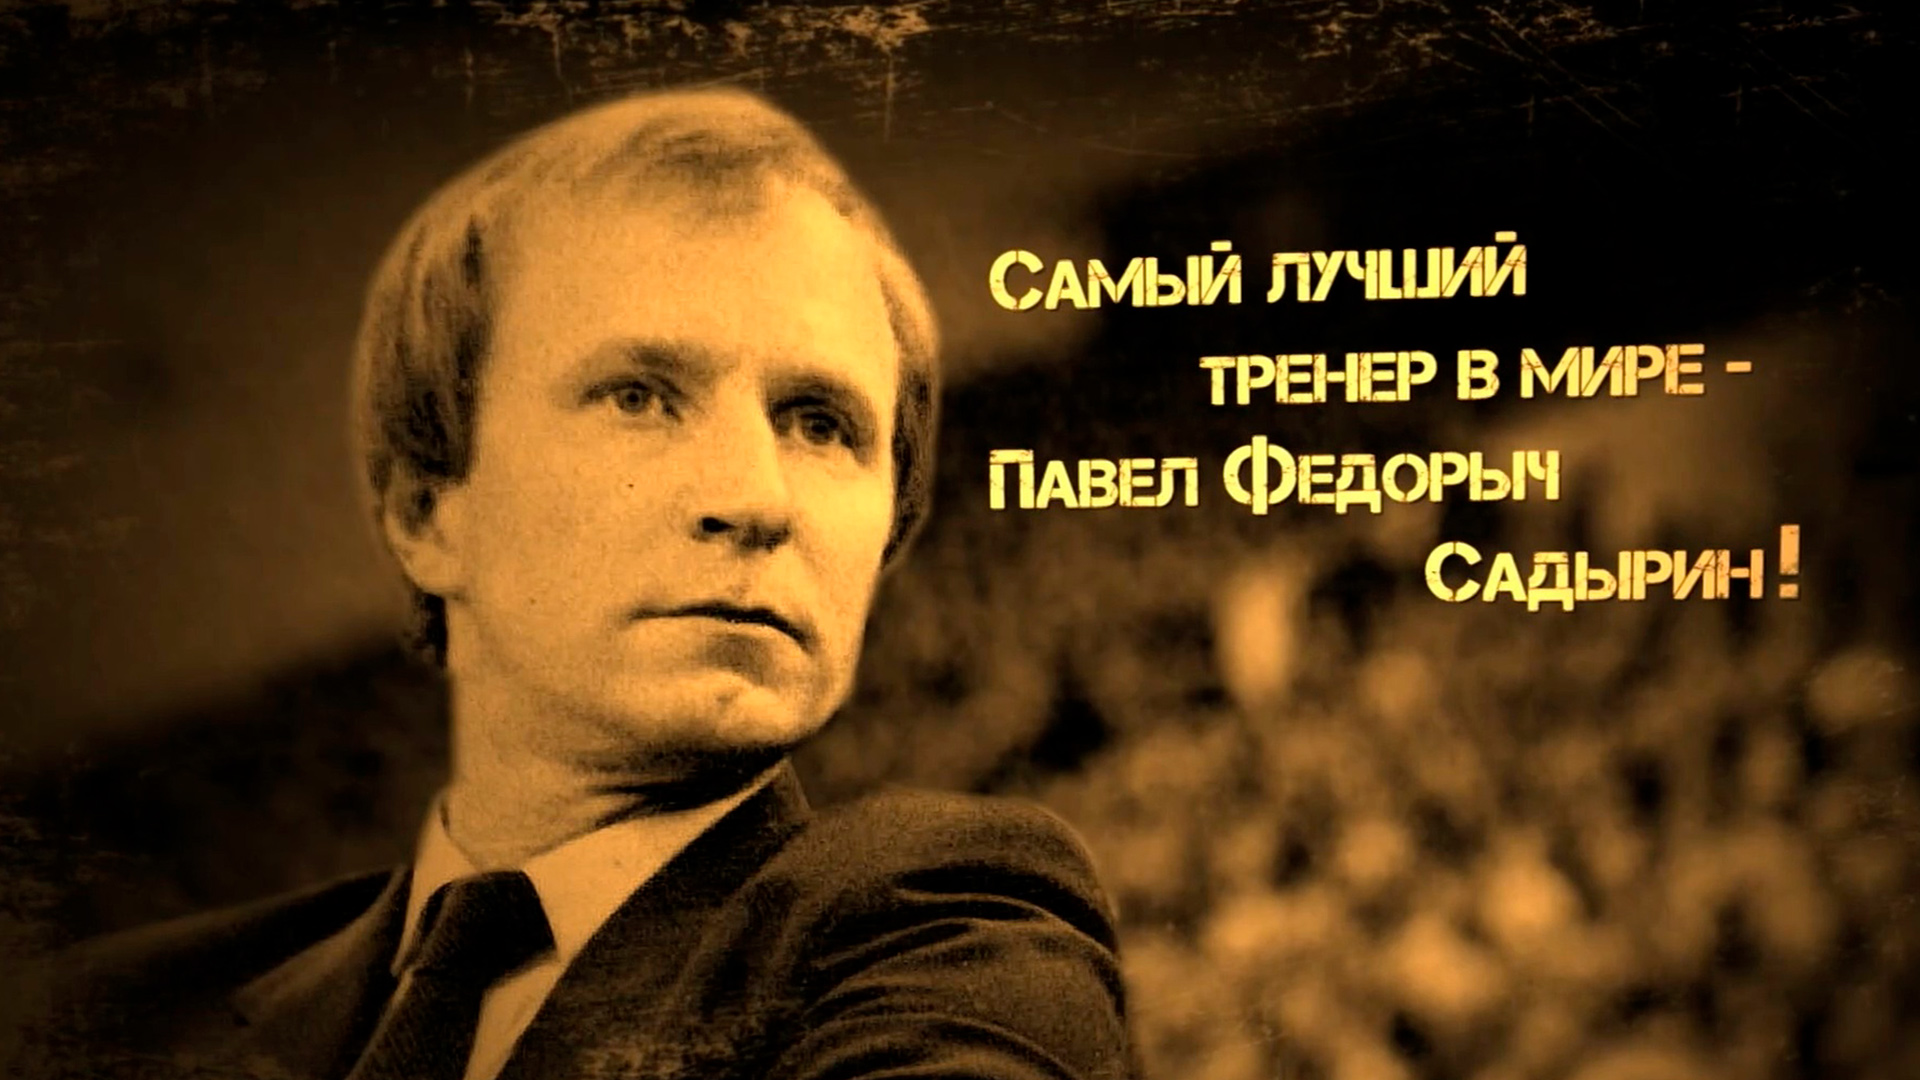 Самый лучший тренер в мире - Павел Фёдорыч Садырин!